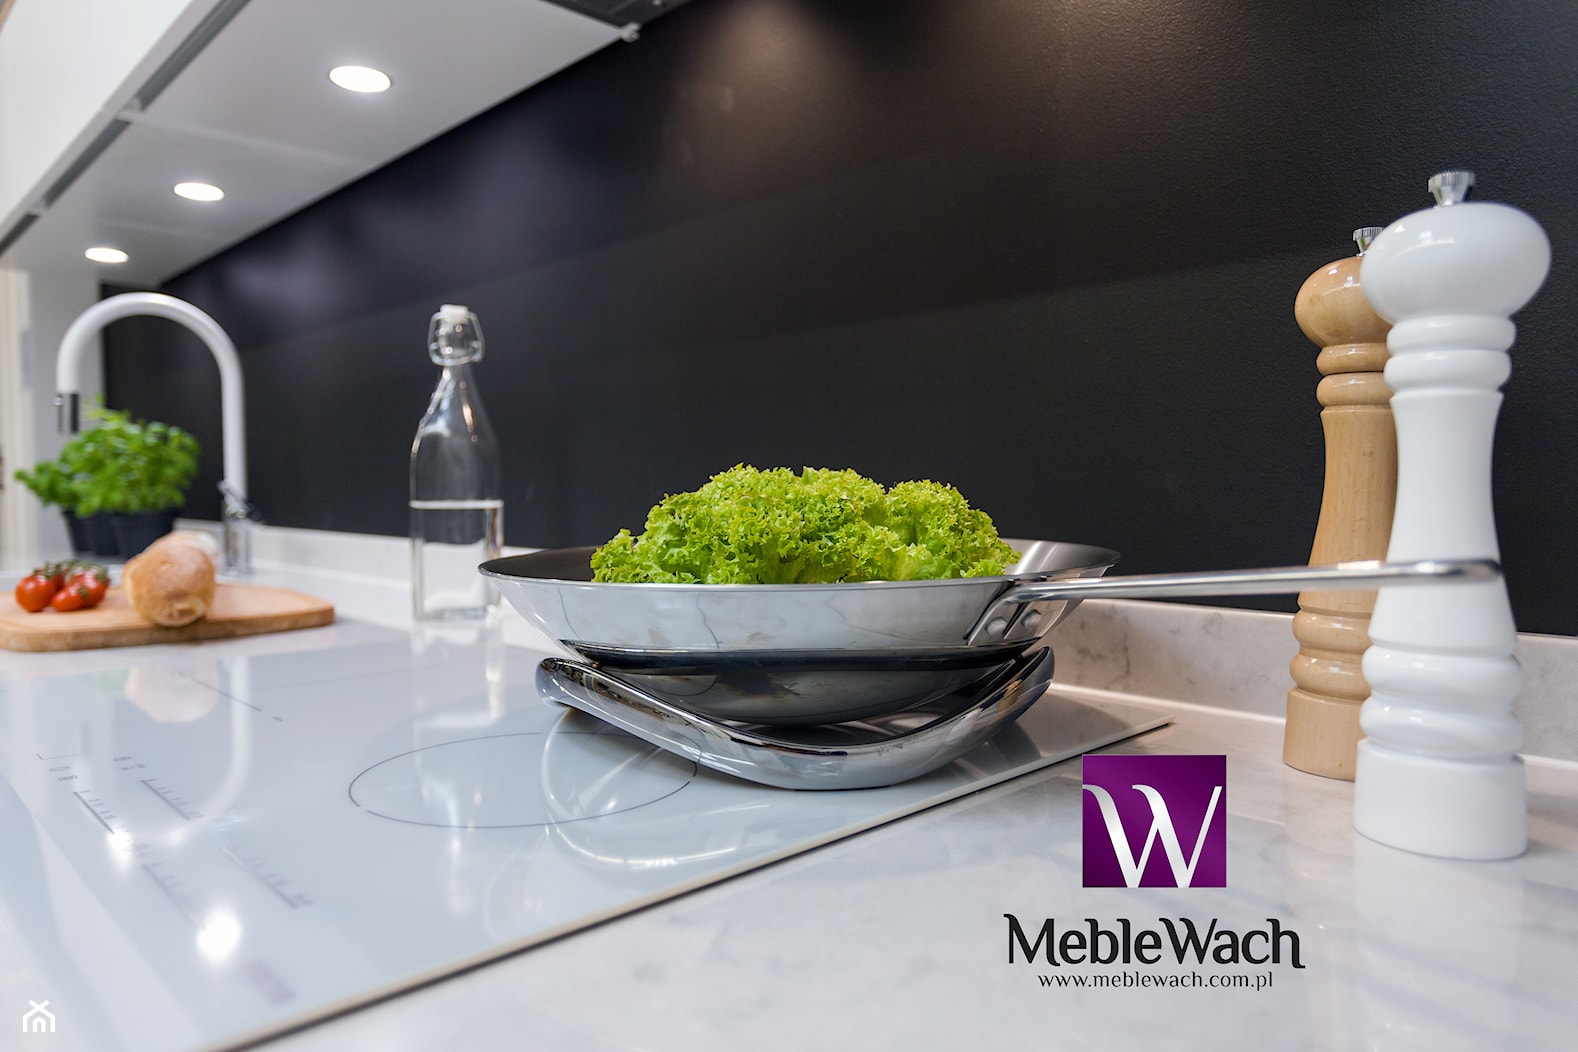 Meble Wach - Meble na wymiar - Pomiar Projekt kuchni Wizualizacja 3D - www.meblewach.com.pl - zdjęcie od Meble Wach - KUCHNIE - SZAFY I GARDEROBY - ŁAZIENKI - Meble na zamówienie - Homebook